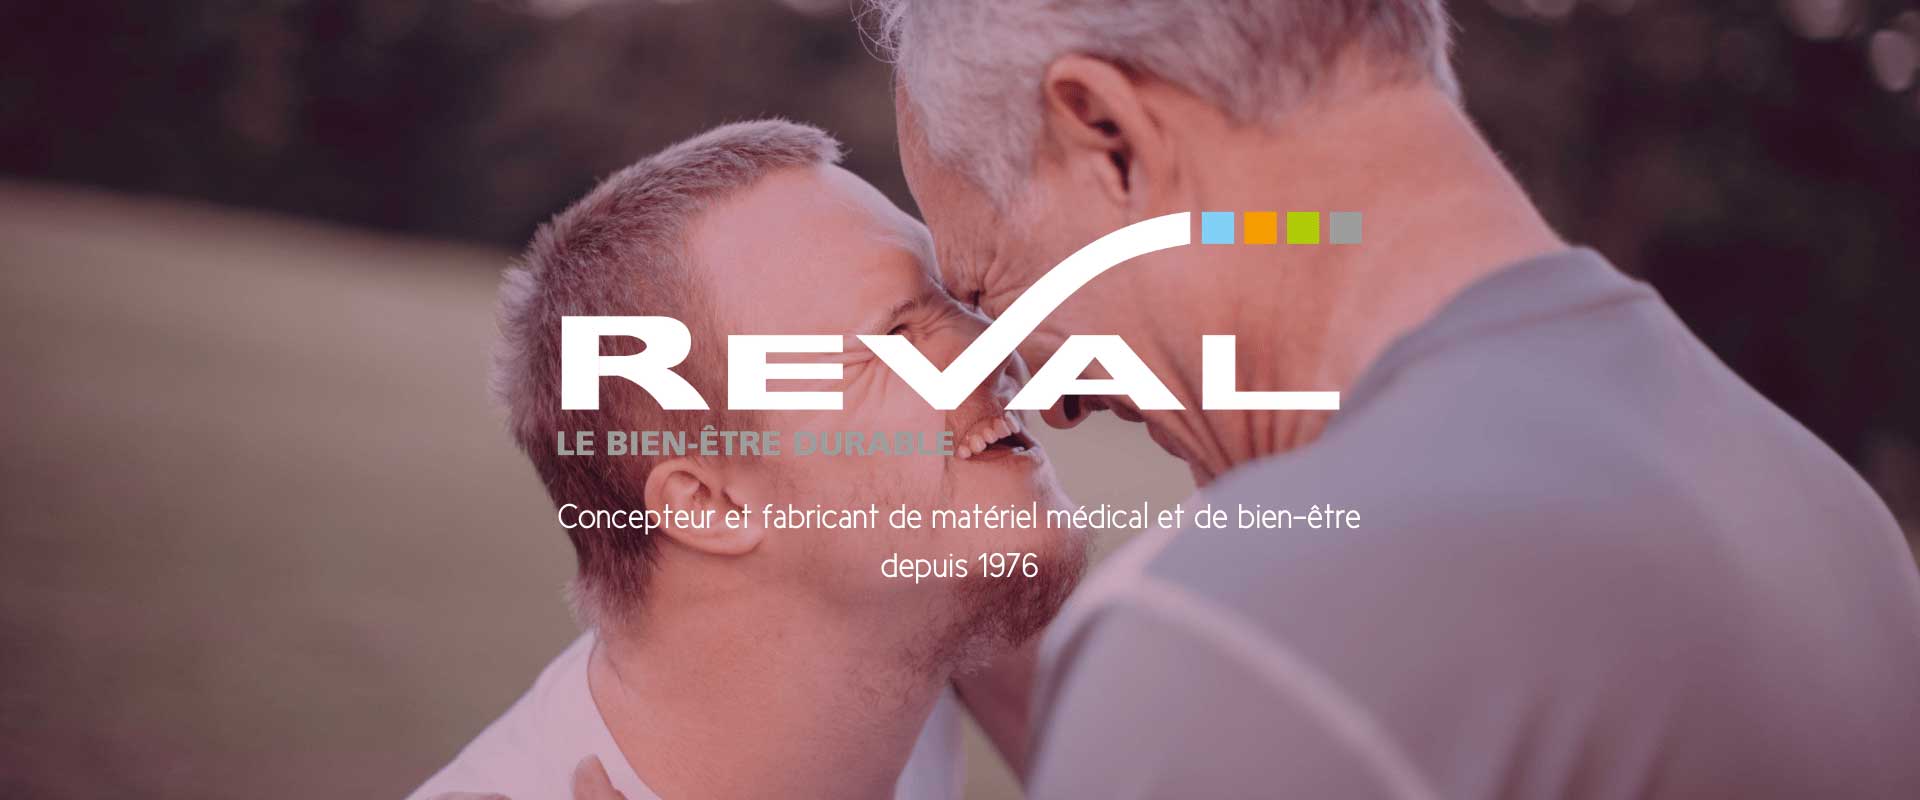 France Reval propose du matériel médical depuis 1976.